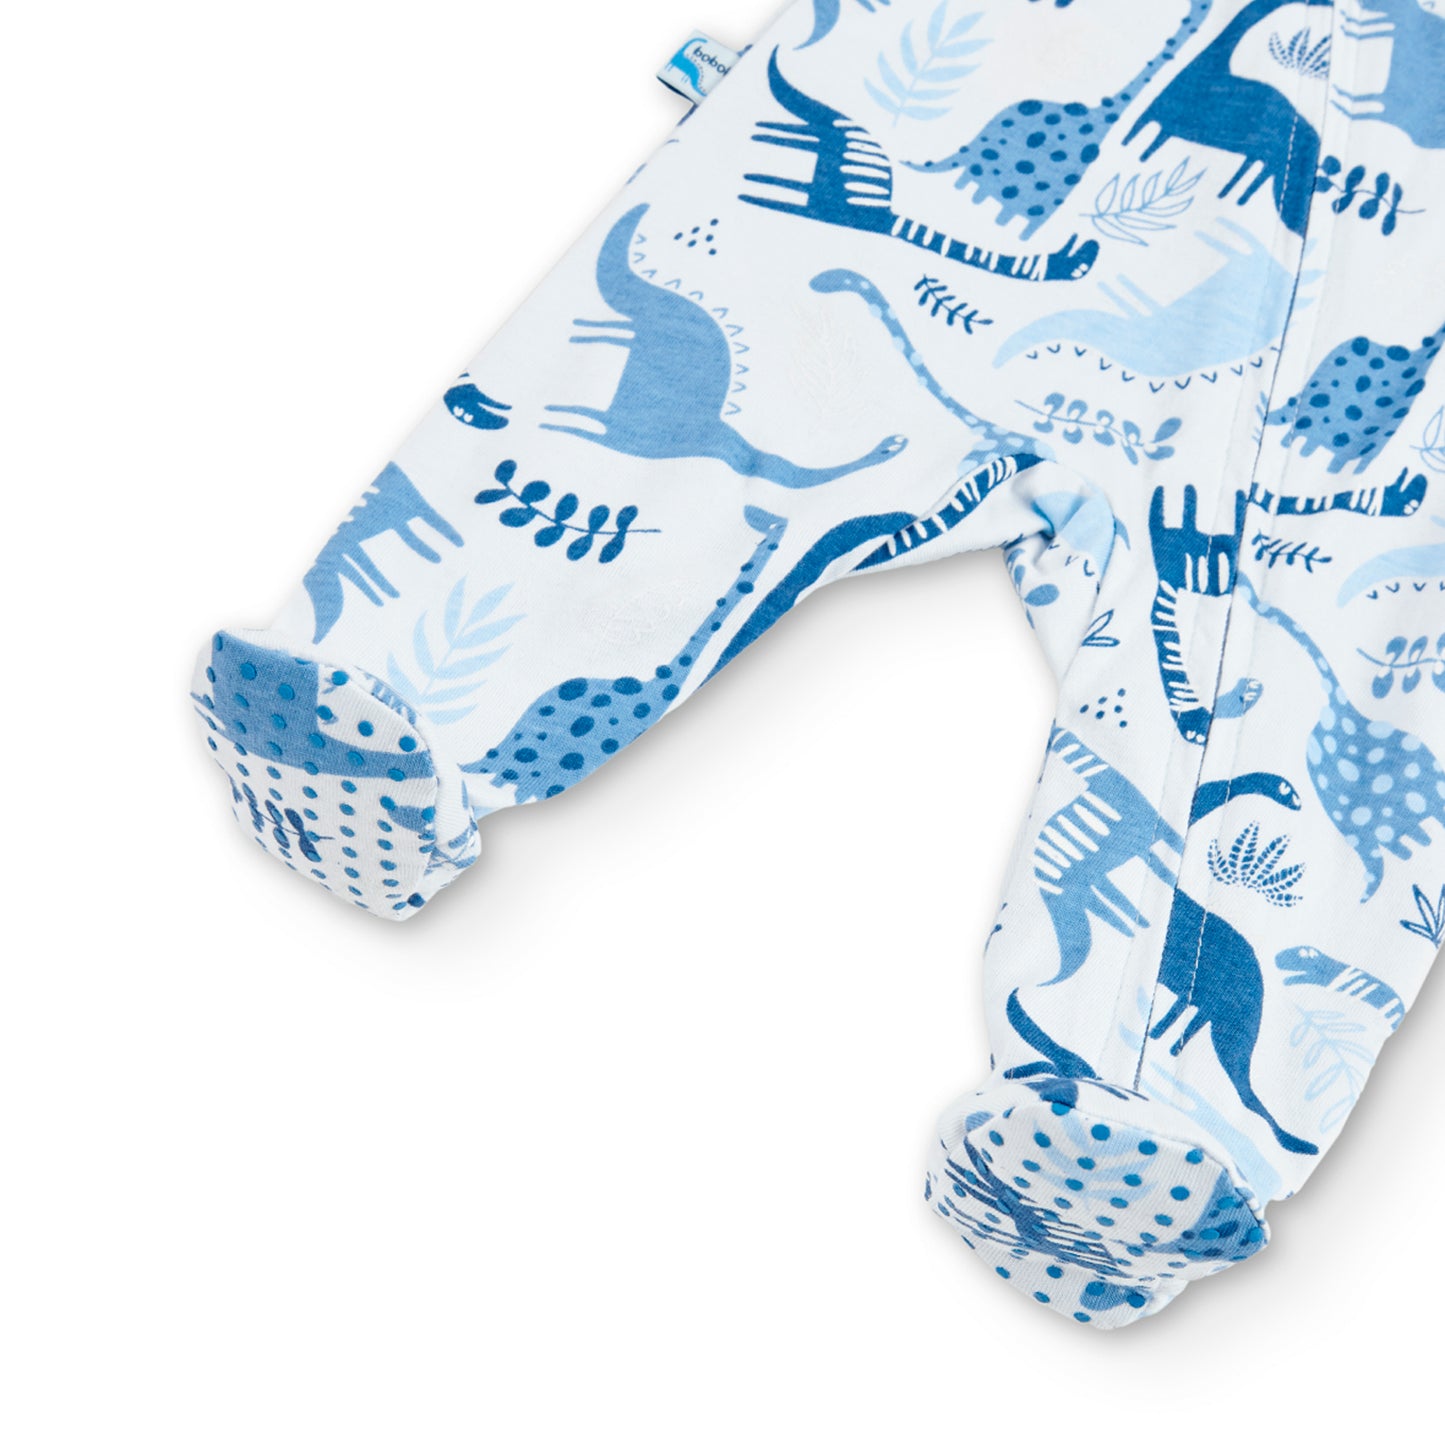 Pijama con Cremallera Boboli Dinosaurios Azul